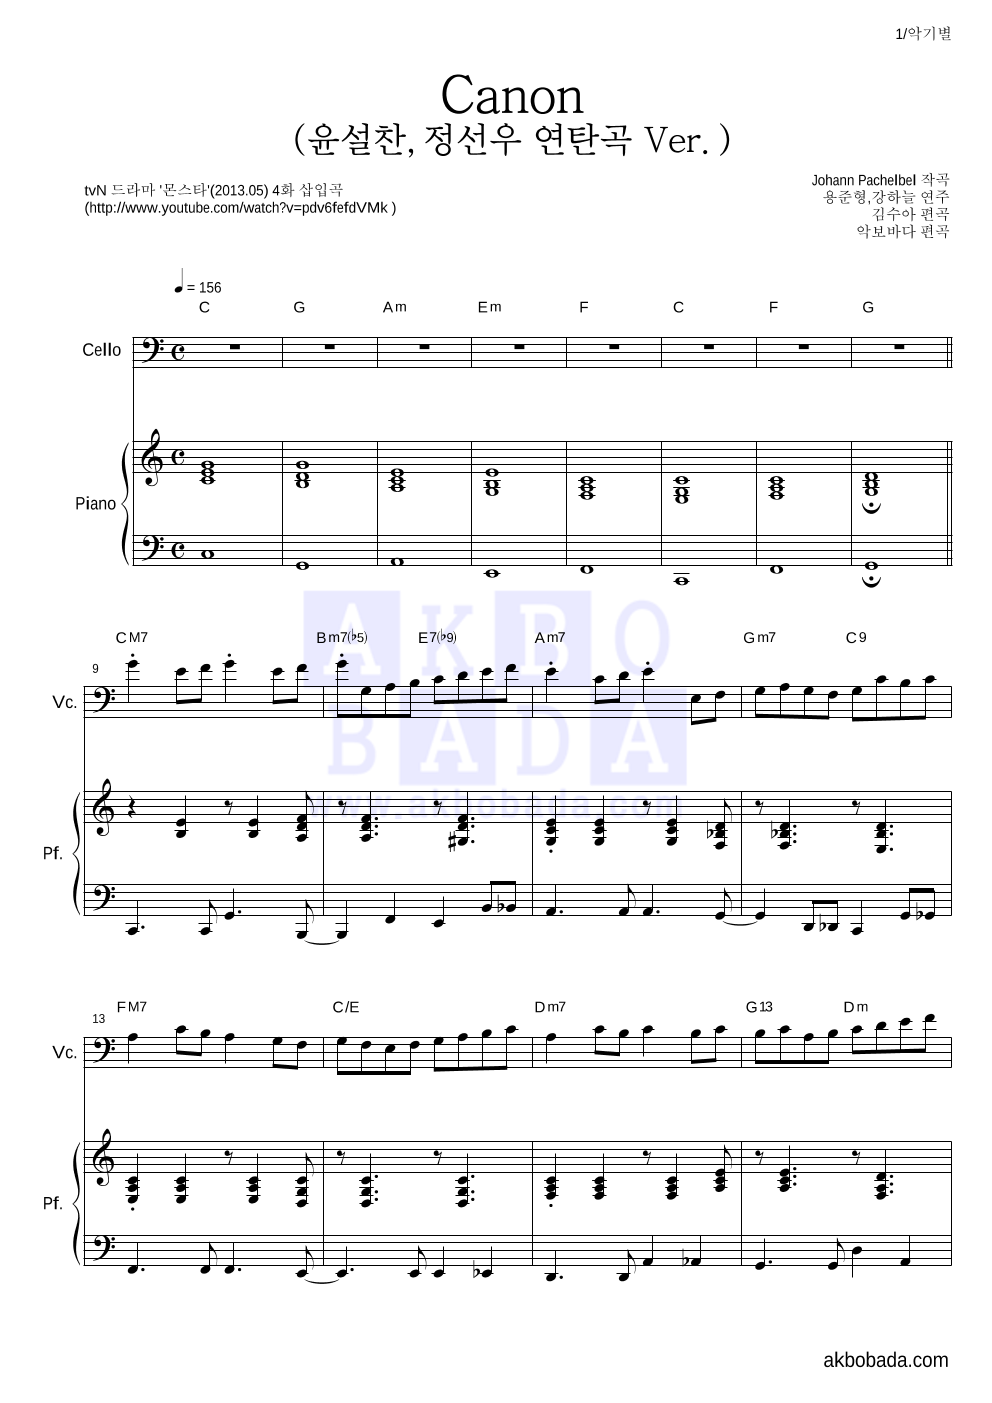 용준형,강하늘 - Canon (윤설찬,정선우 연탄곡 Ver.) 첼로&피아노 악보 